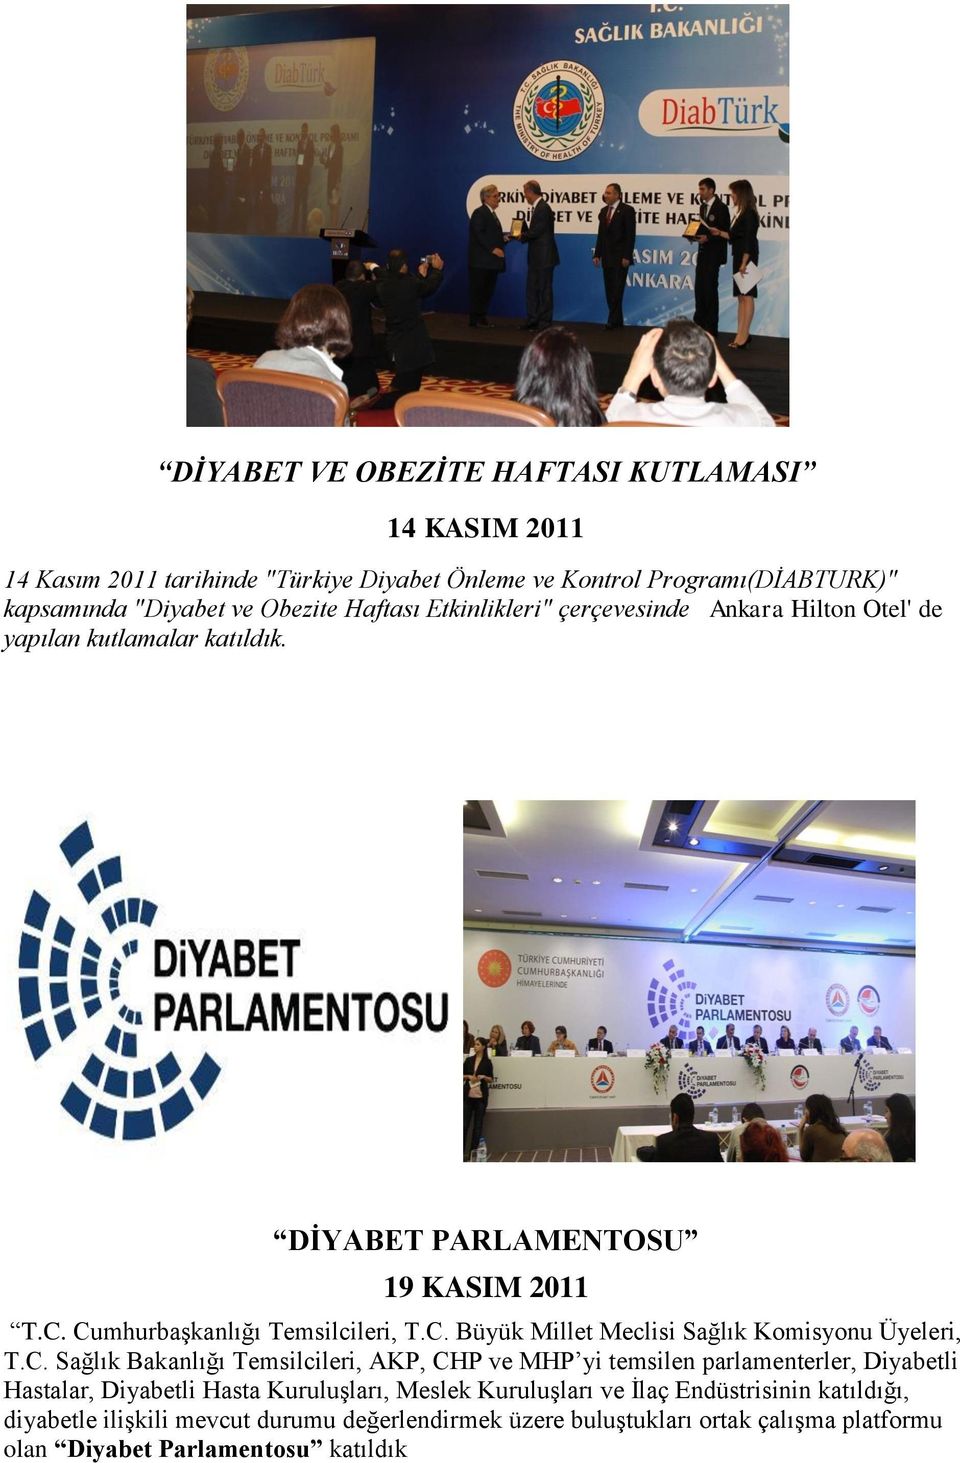 C. Sağlık Bakanlığı Temsilcileri, AKP, CHP ve MHP yi temsilen parlamenterler, Diyabetli Hastalar, Diyabetli Hasta Kuruluşları, Meslek Kuruluşları ve İlaç Endüstrisinin